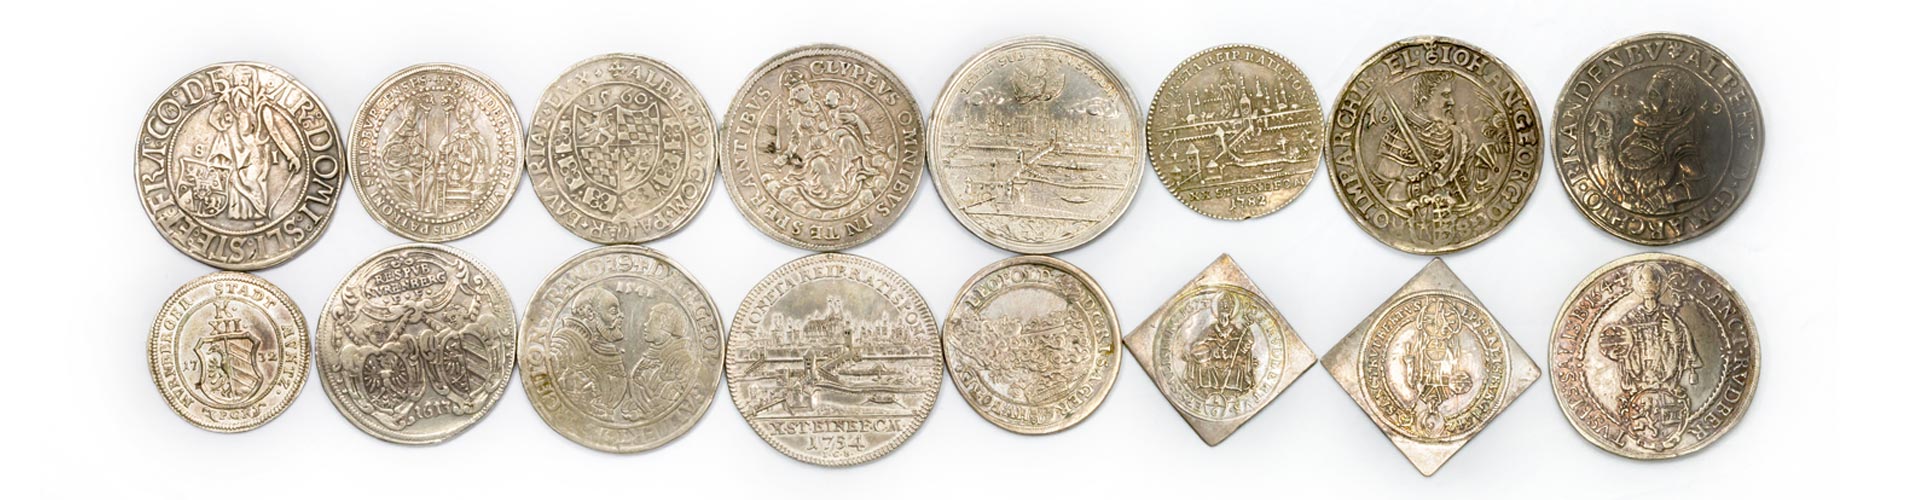 16 Verschiedene historische Sammlermünzen aus Silber